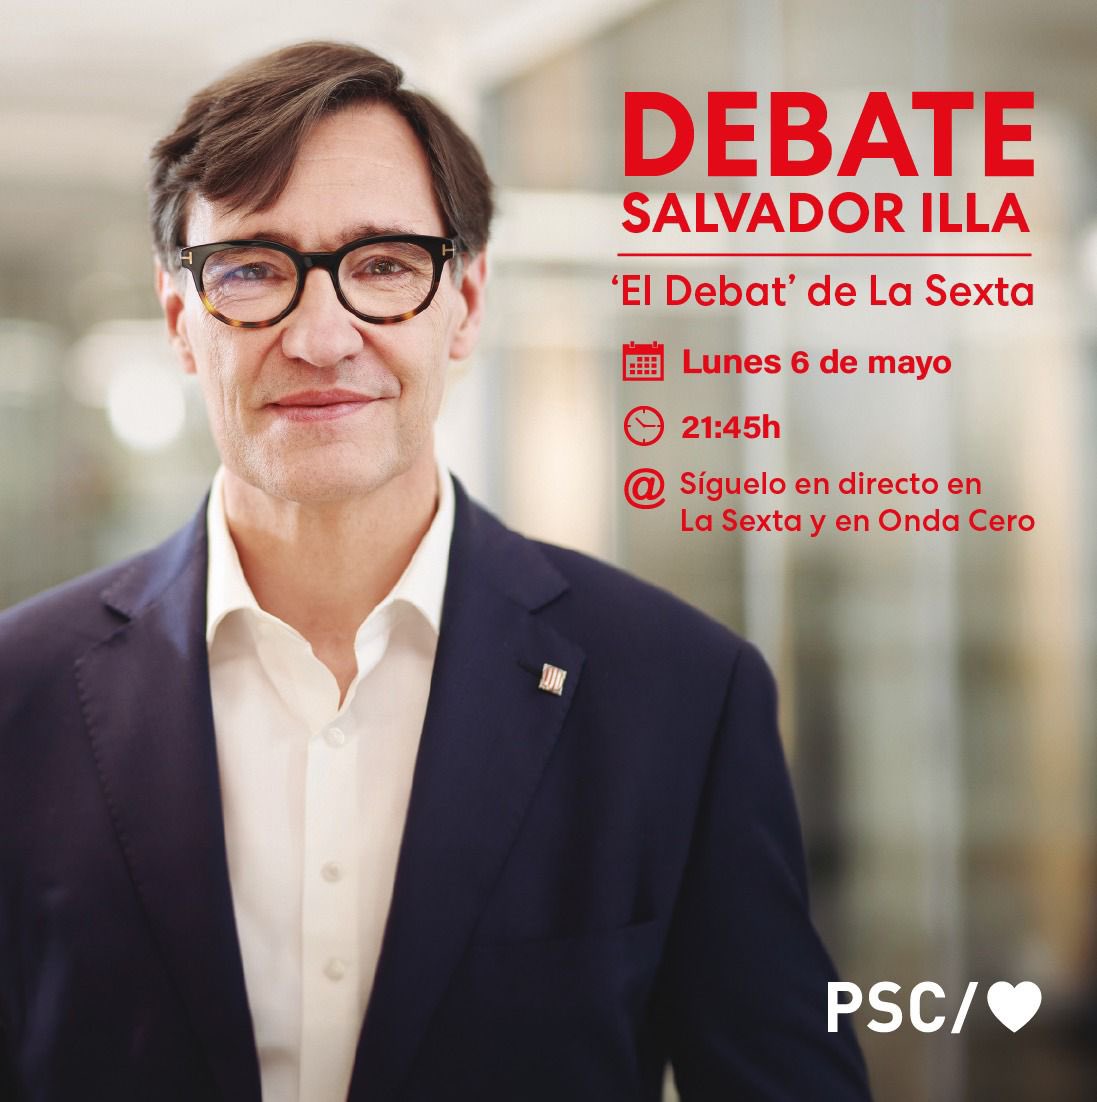 🔴 A partir de les 21:45h, el candidato a la presidencia de la Generalitat de Cataluña, @salvadorilla, participará en 'El Debat' de @laSextaTV 

▶️ ¡Síguelo en directo a través de las redes del PSC!

#ForçaPerGovernar #IllaPresident #VotaPSC